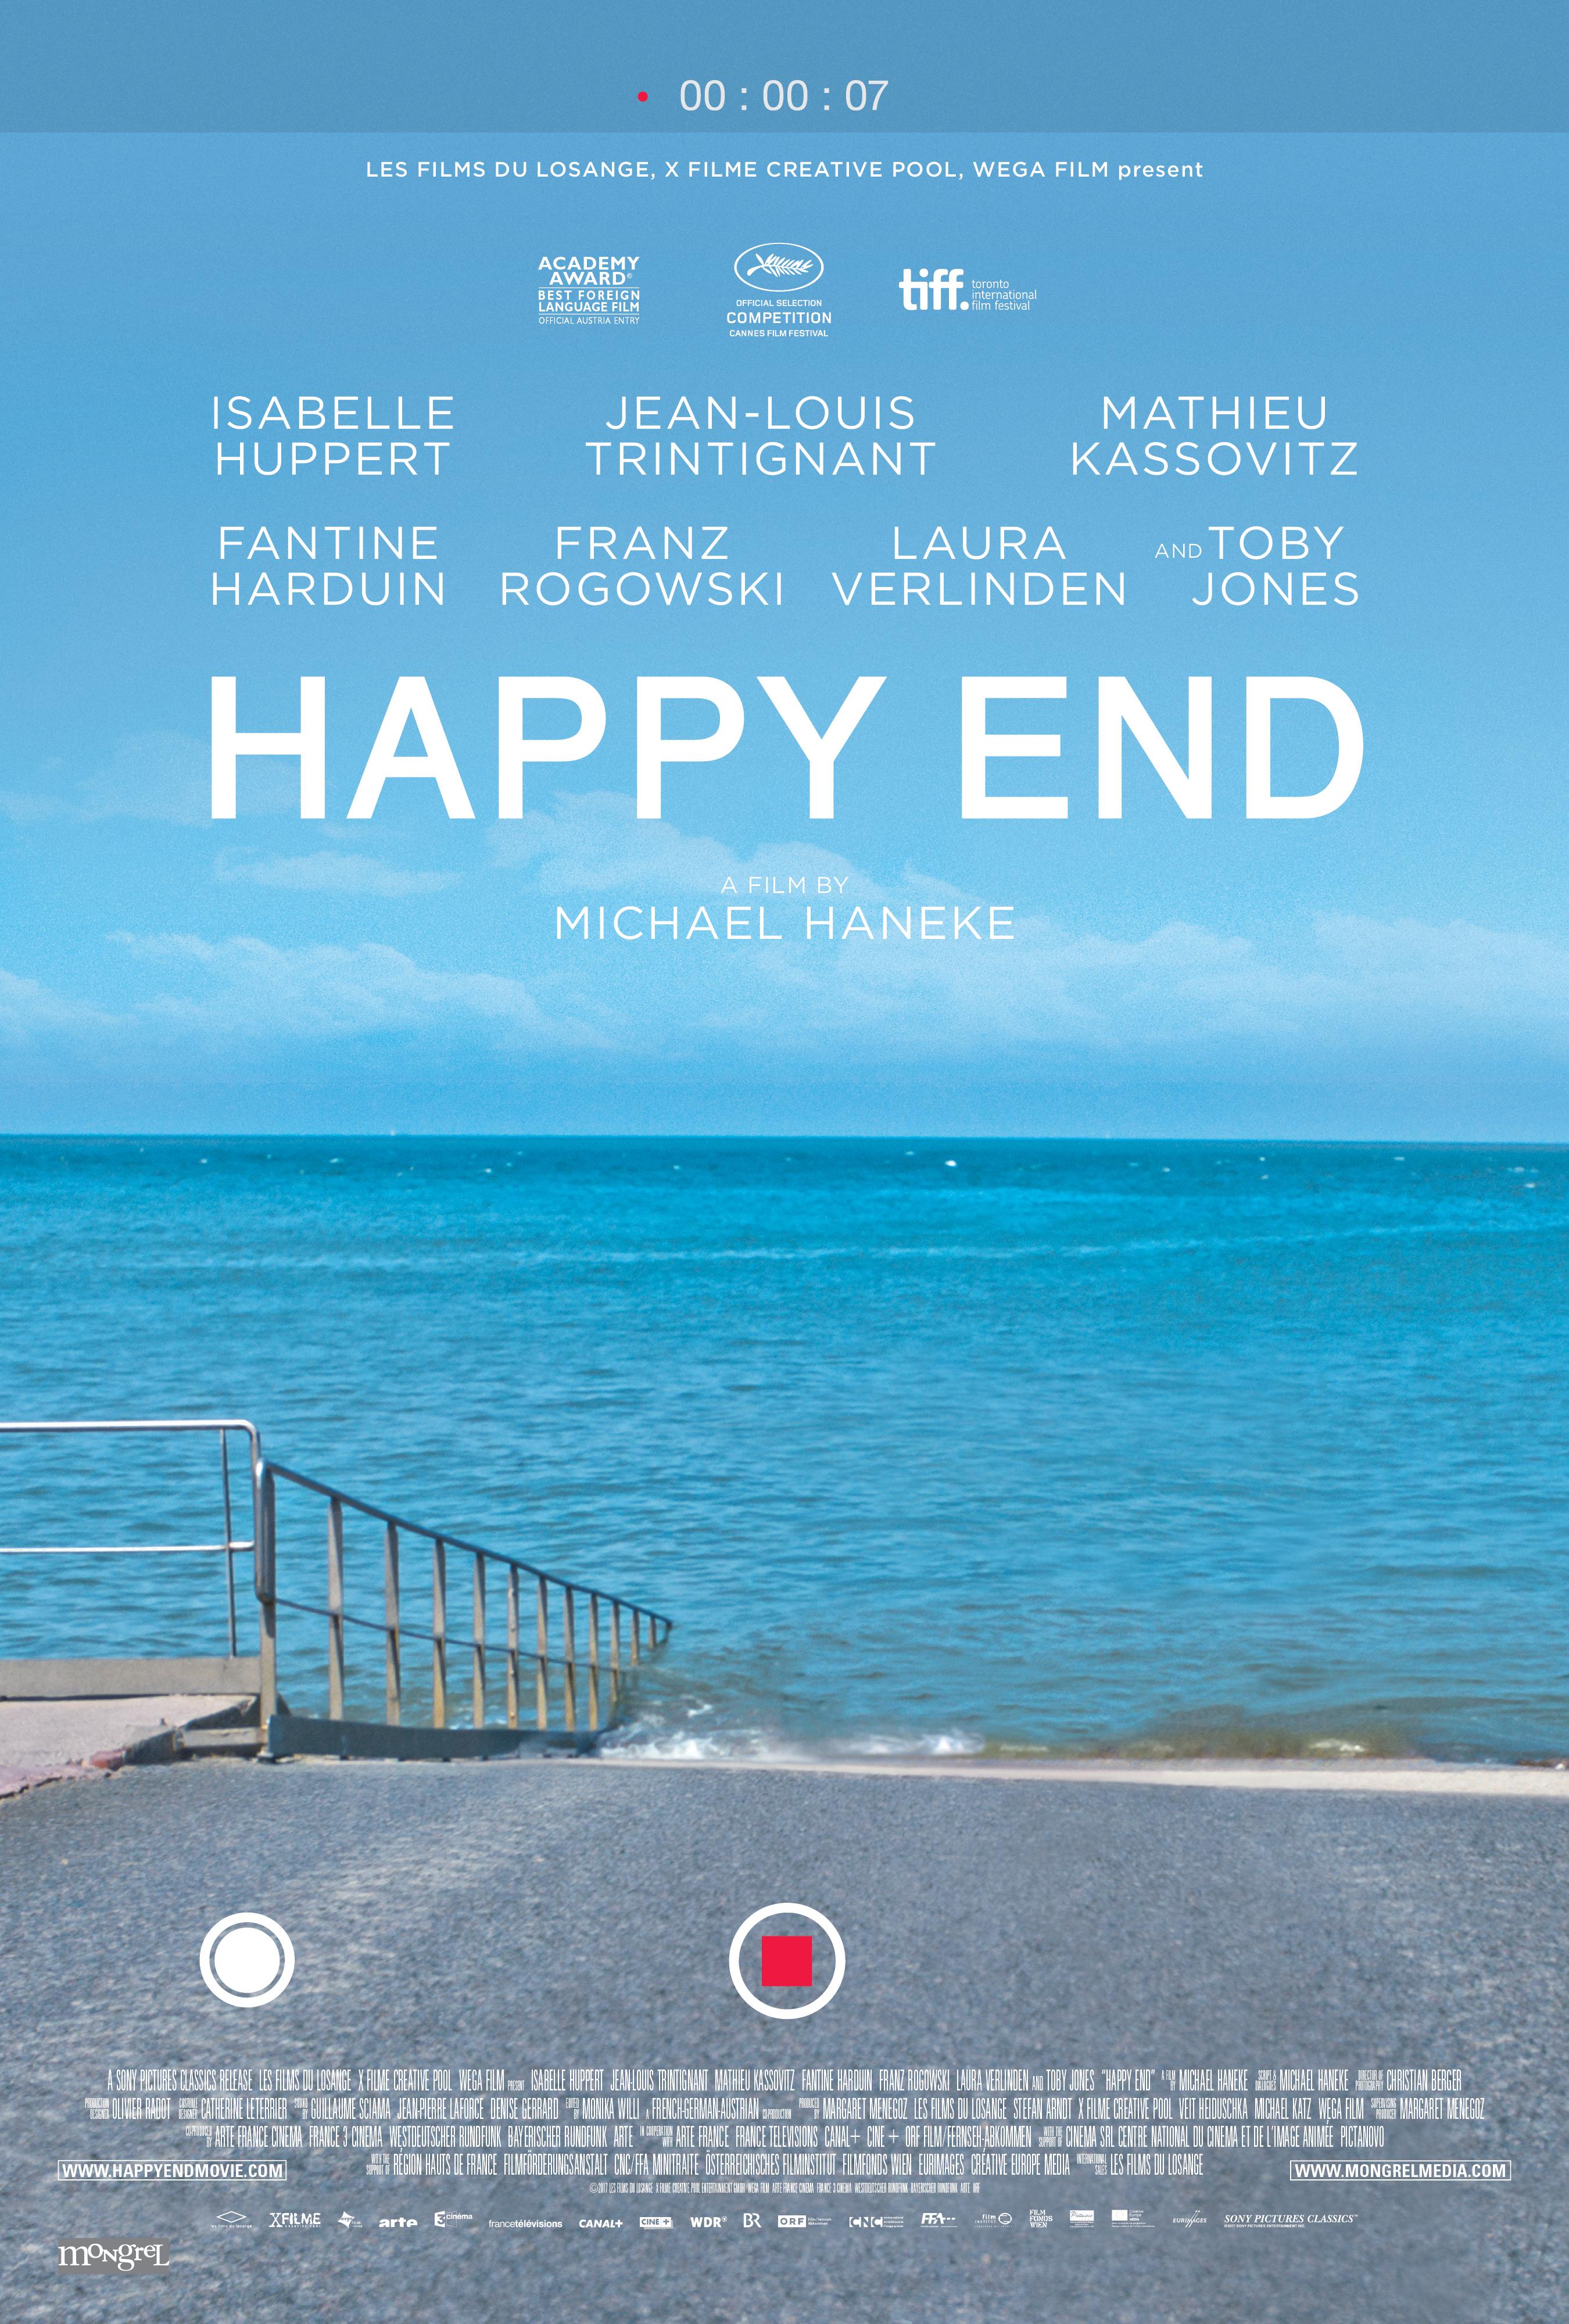 Nonton film Happy End layarkaca21 indoxx1 ganool online streaming terbaru